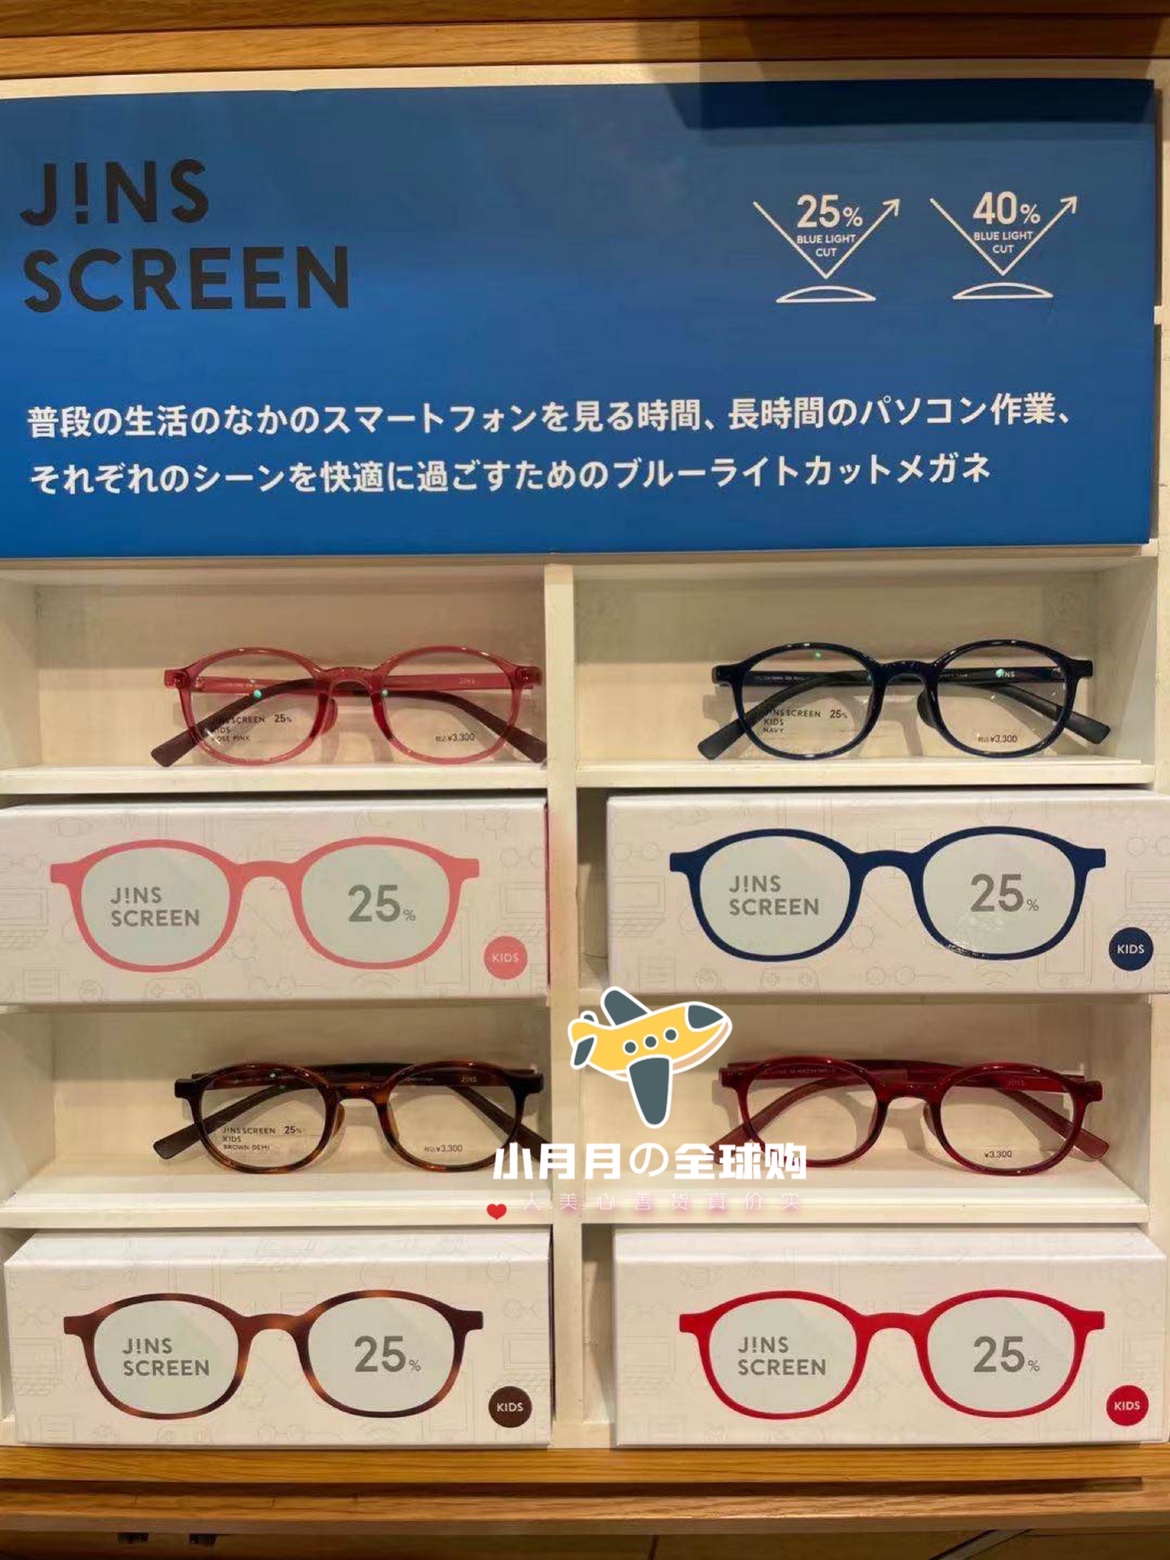 现货包邮 日本本土JINS儿童防蓝光防辐射网课ipad手机护眼镜25%